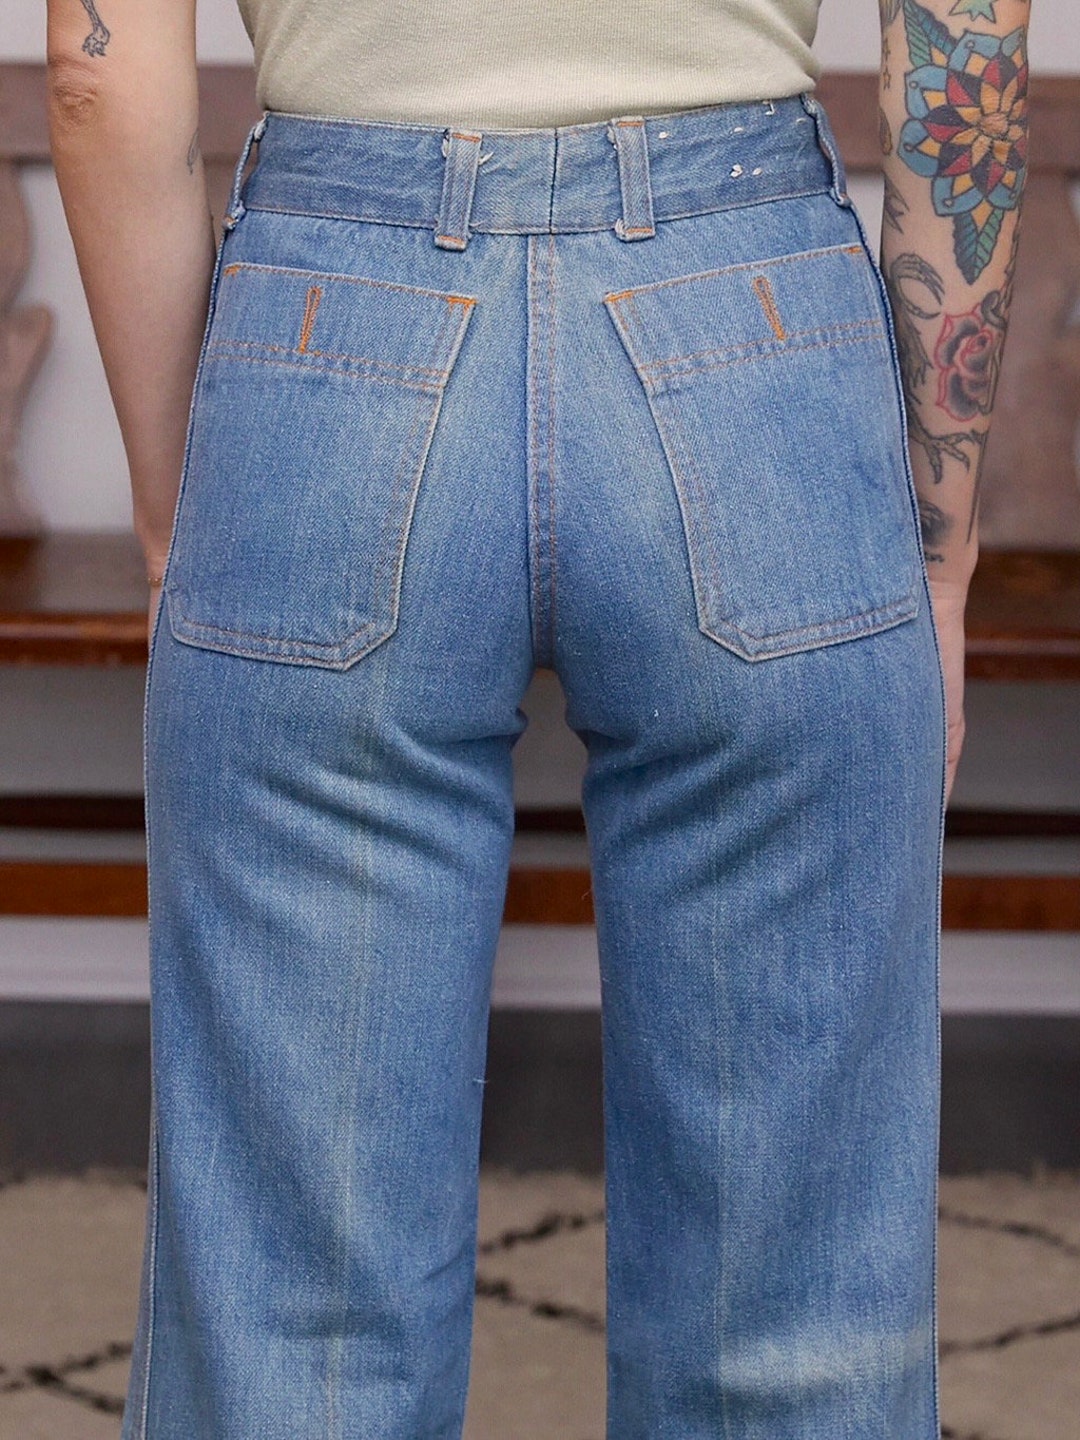 Chemin De Fer / 1970s High Waisted Bellbottom Jeans / 22 23 - Etsy